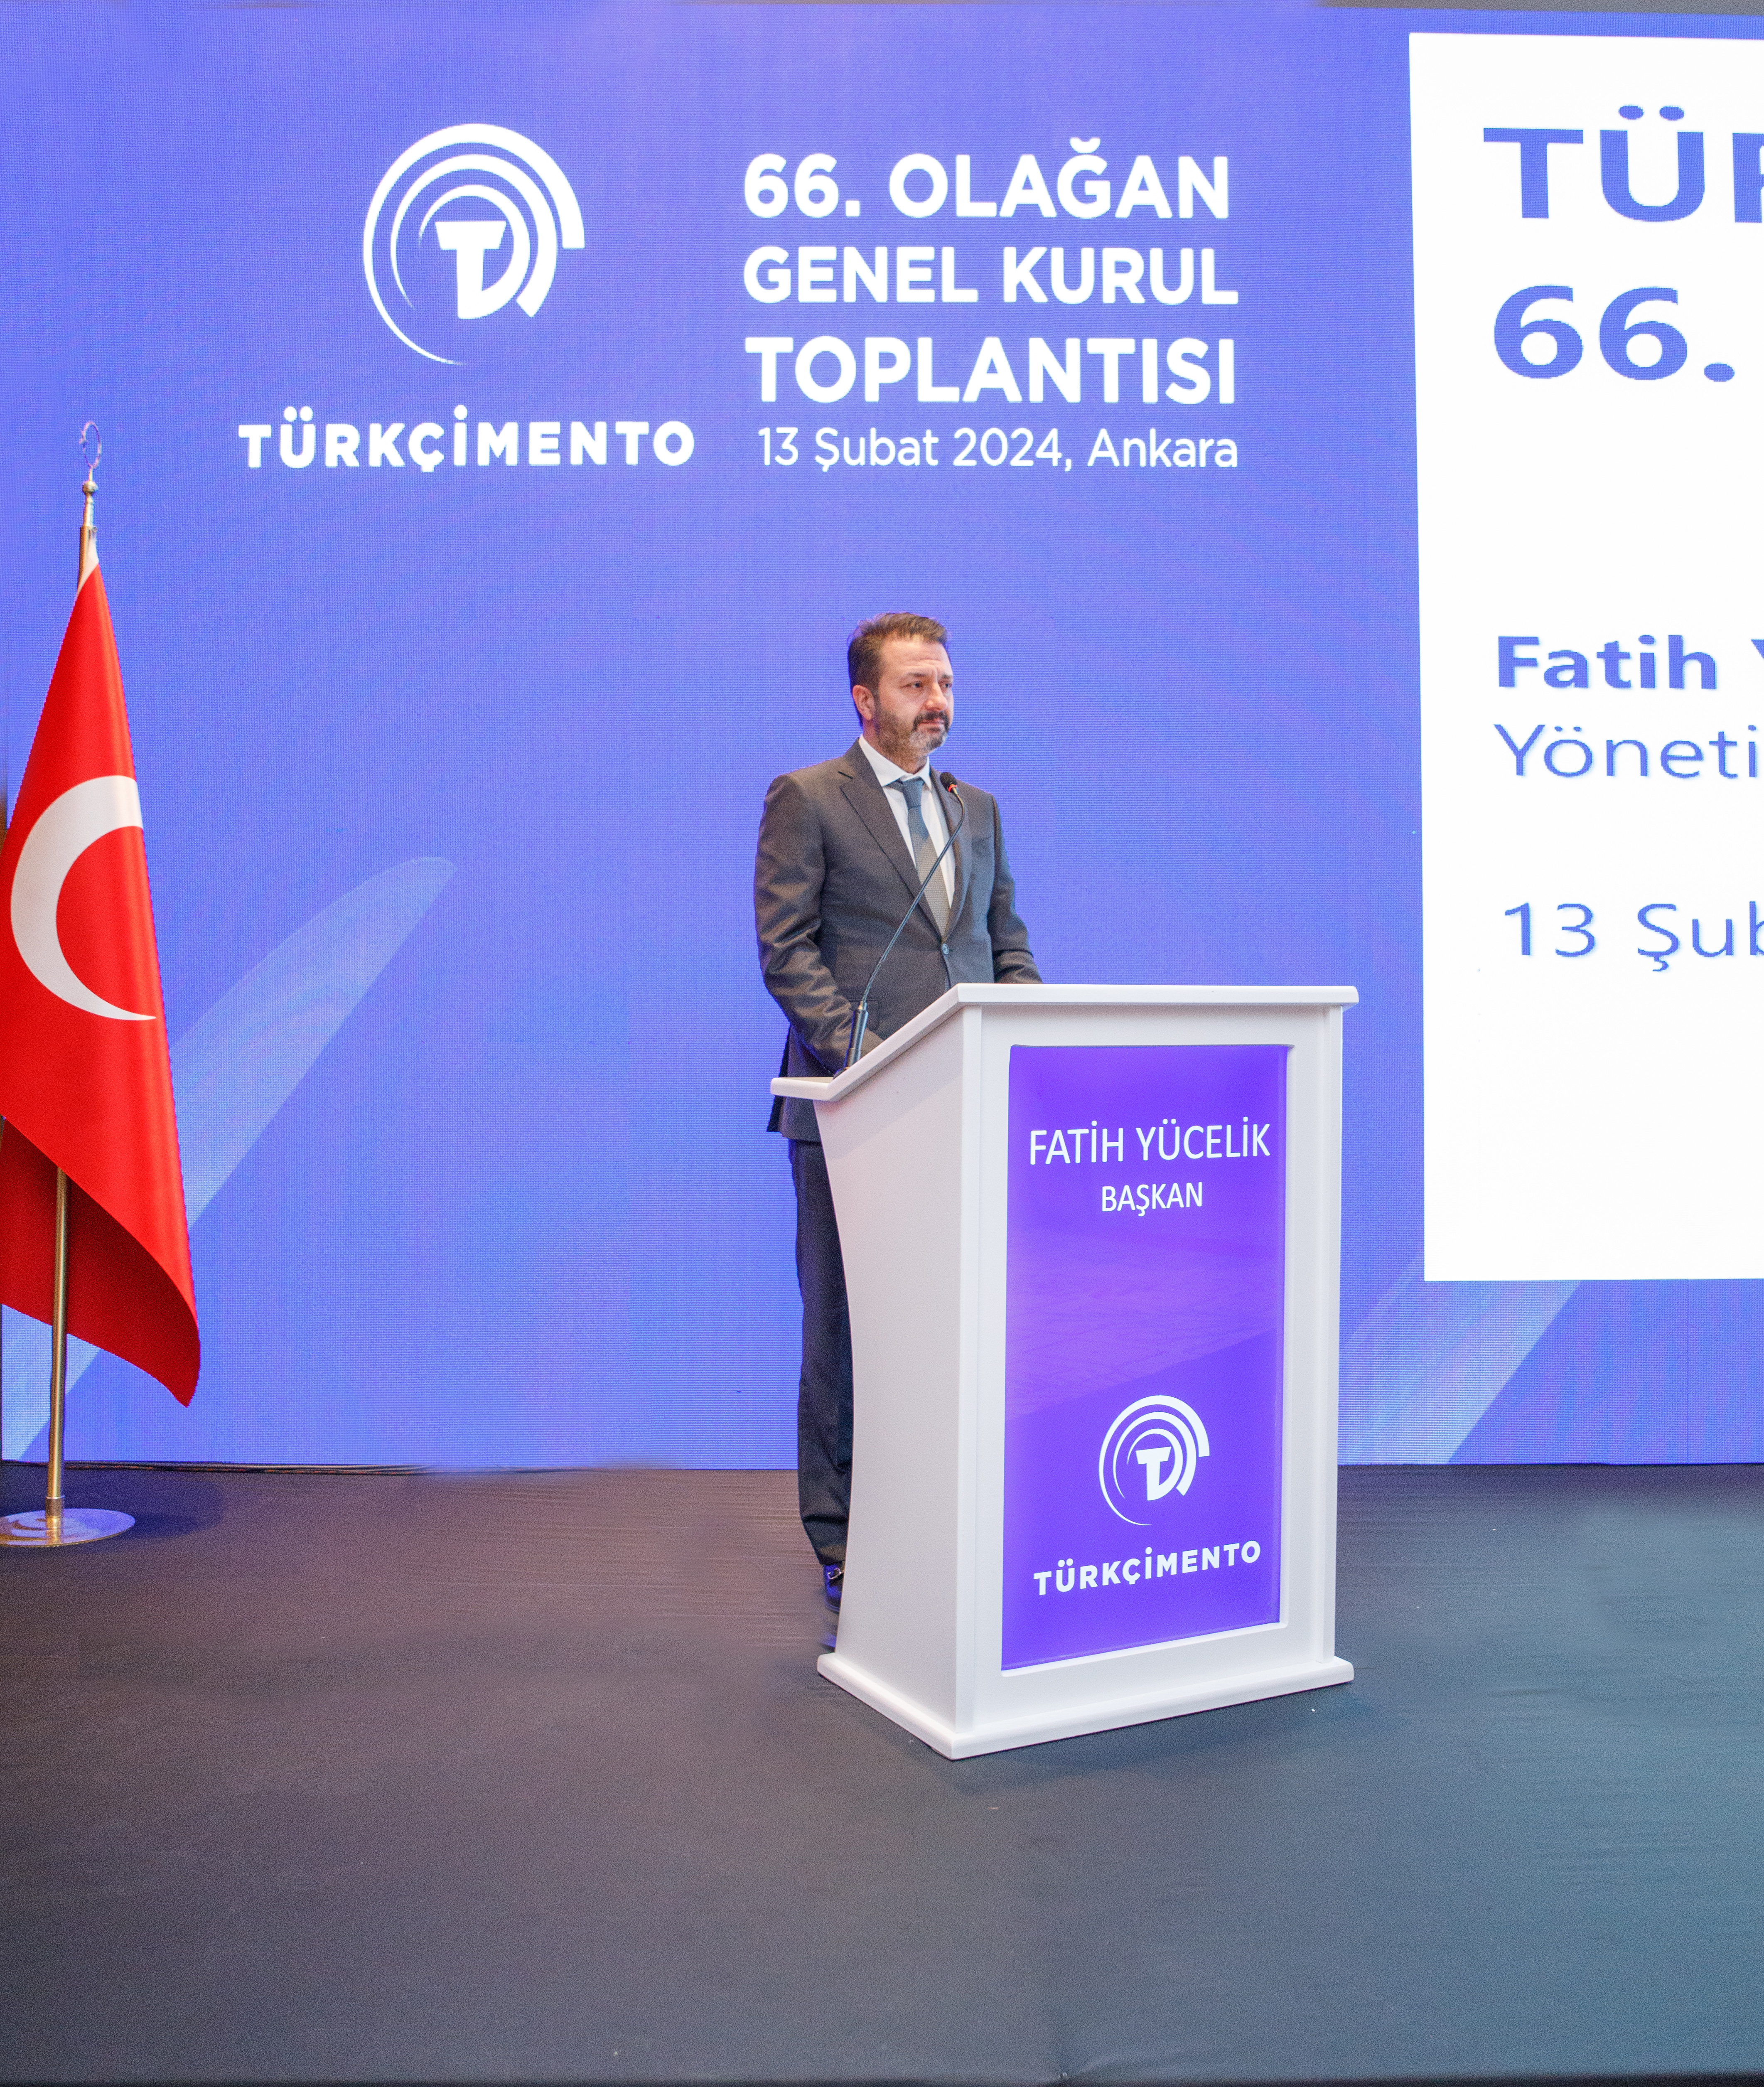 TÜRKÇİMENTO’nun 66’ncı Seçimli Genel Kurulu Ankara’da gerçekleşti: Yücelik güven tazeledi